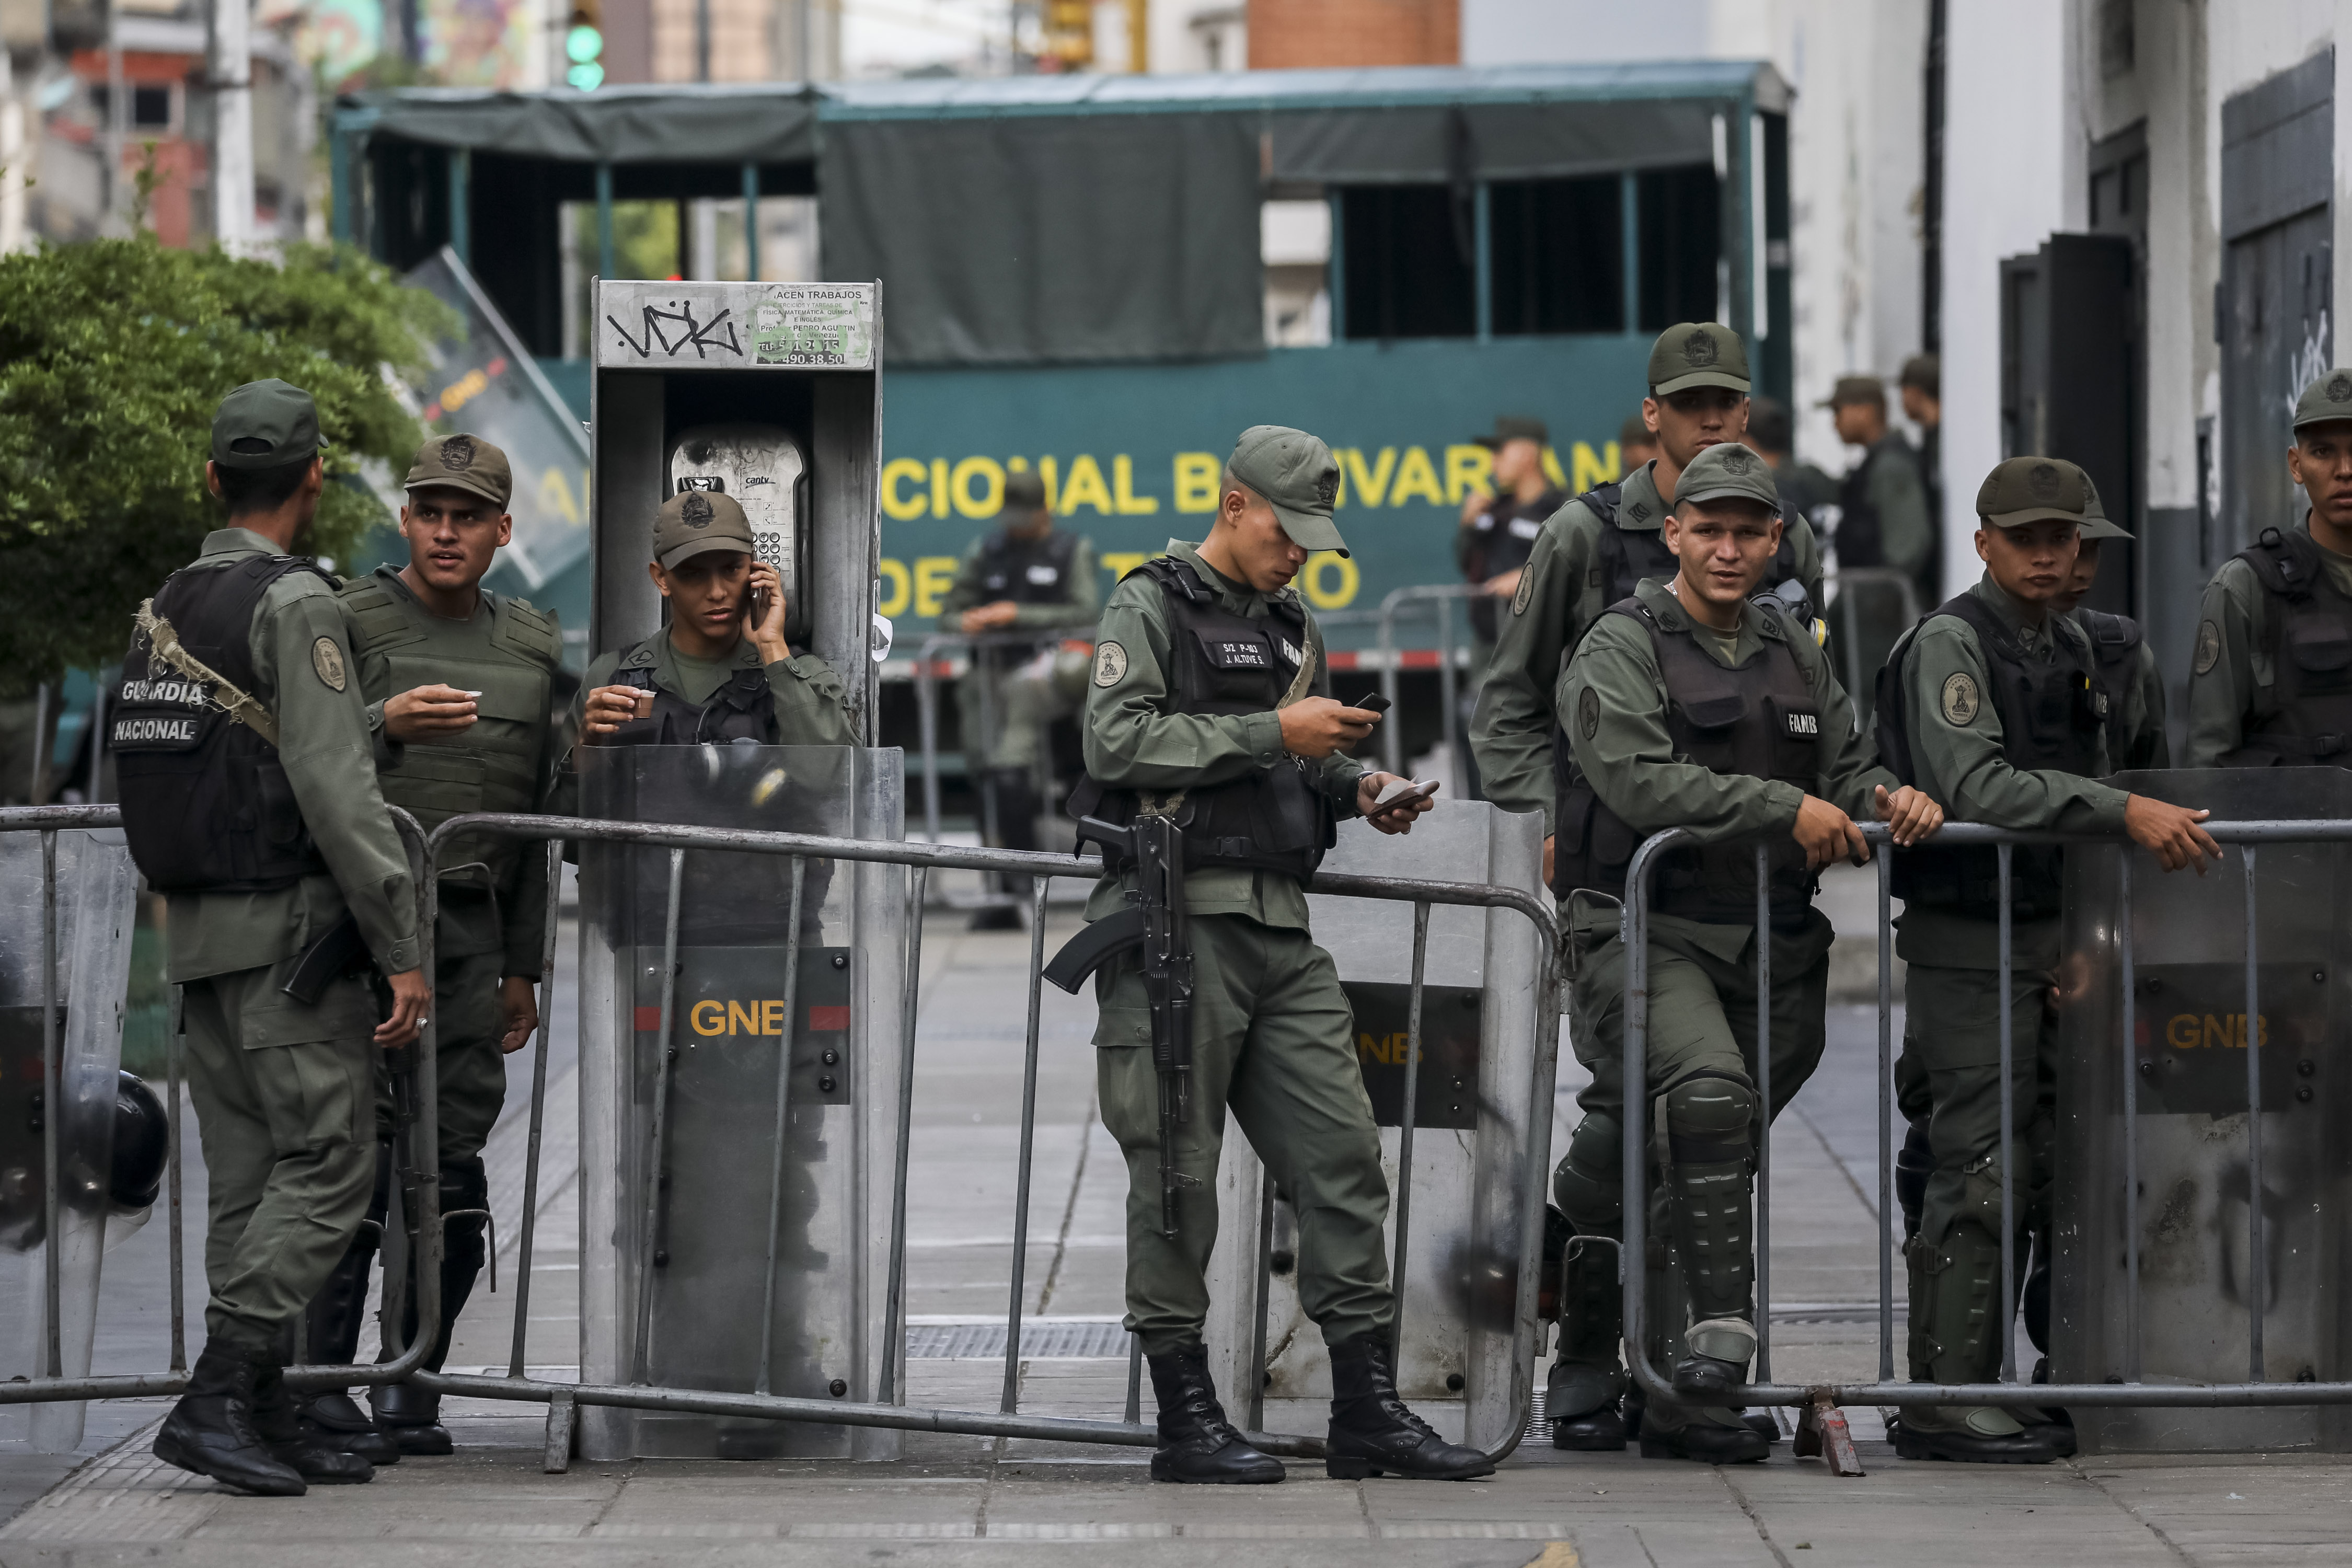 Asalto al cuartel militar venezolano deja un muerto y herido